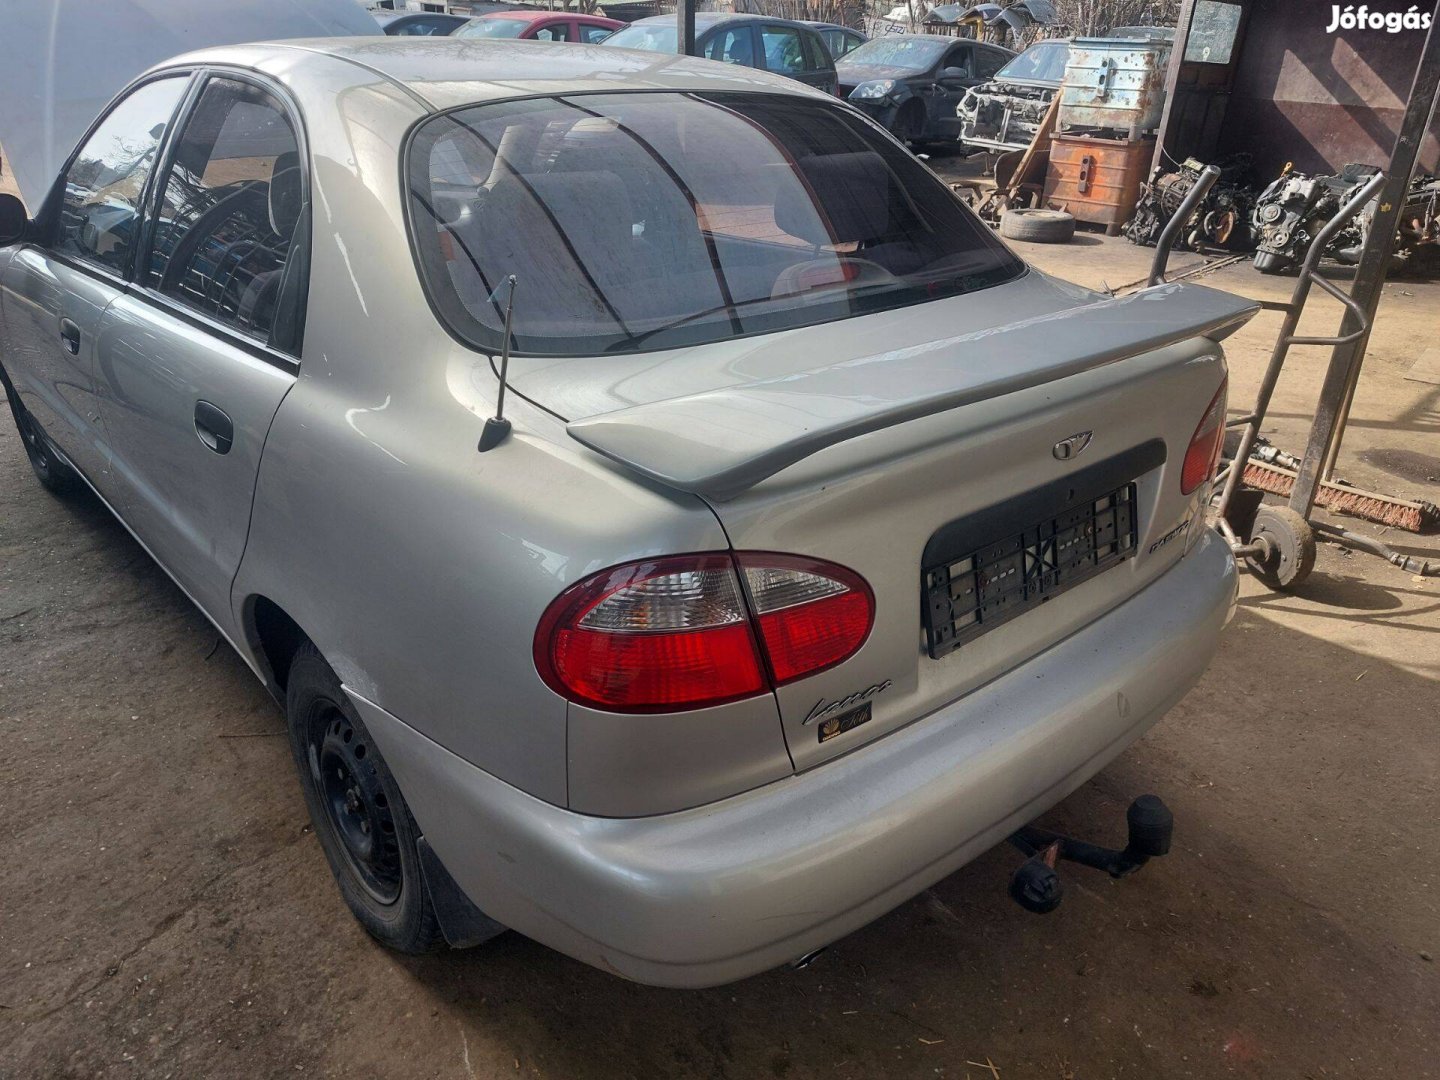 Daewoo Lanos karosszéria elemei szürke sedan